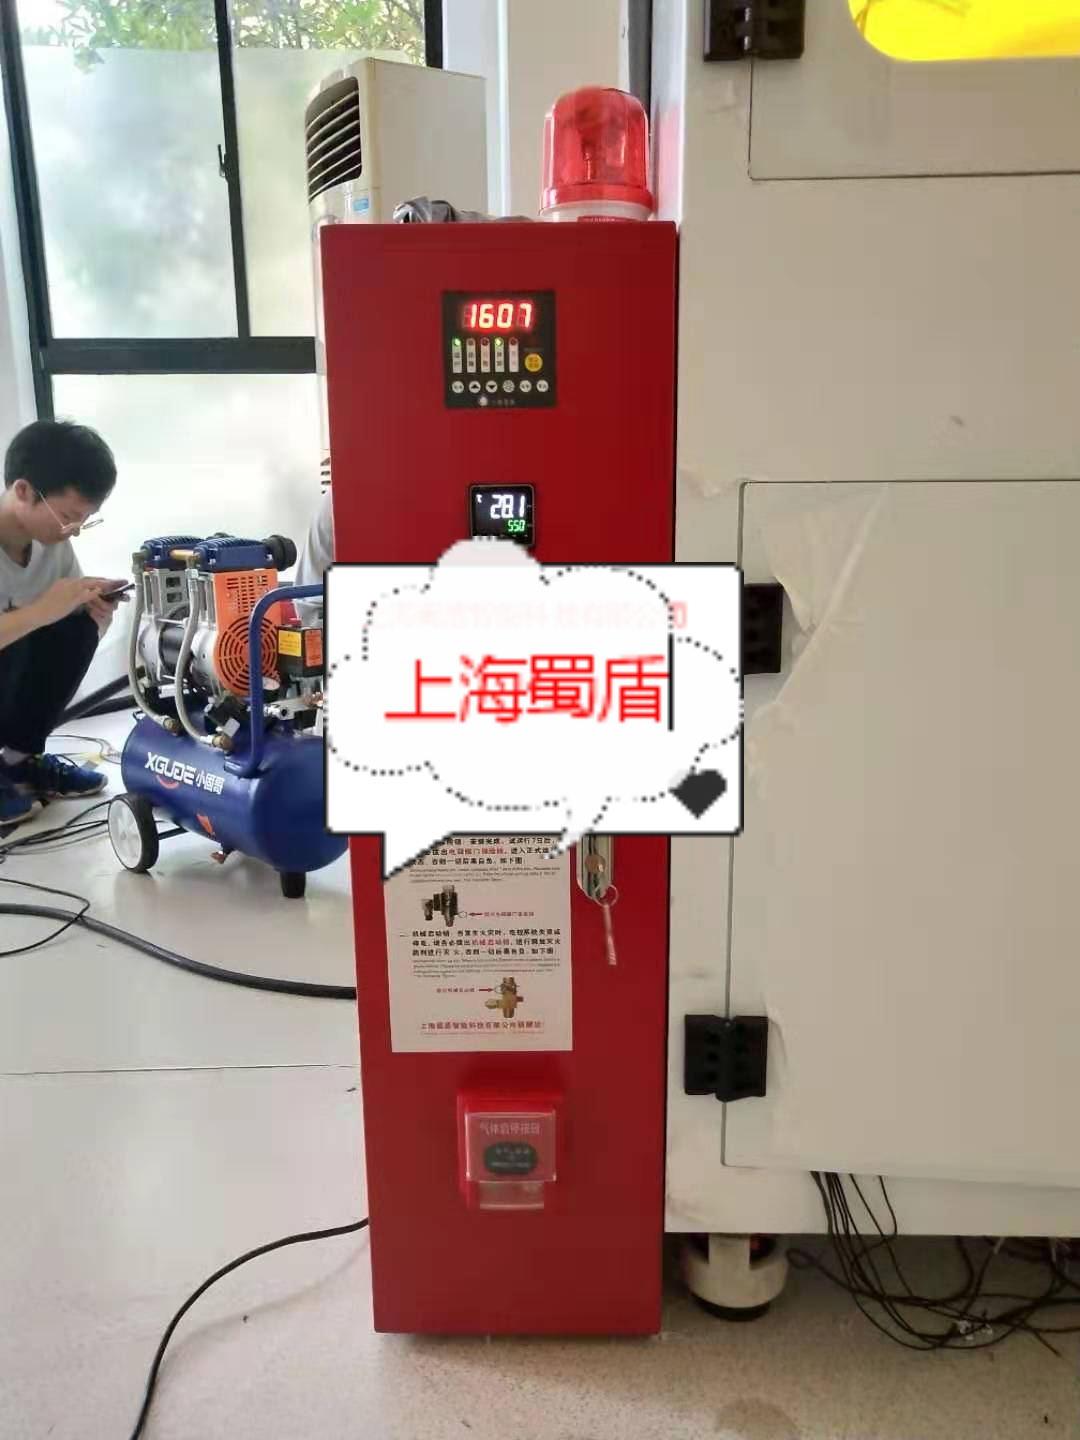 电池立体库自动灭火装置，新能源汽车锂电池仓自动灭火系统——上海蜀盾